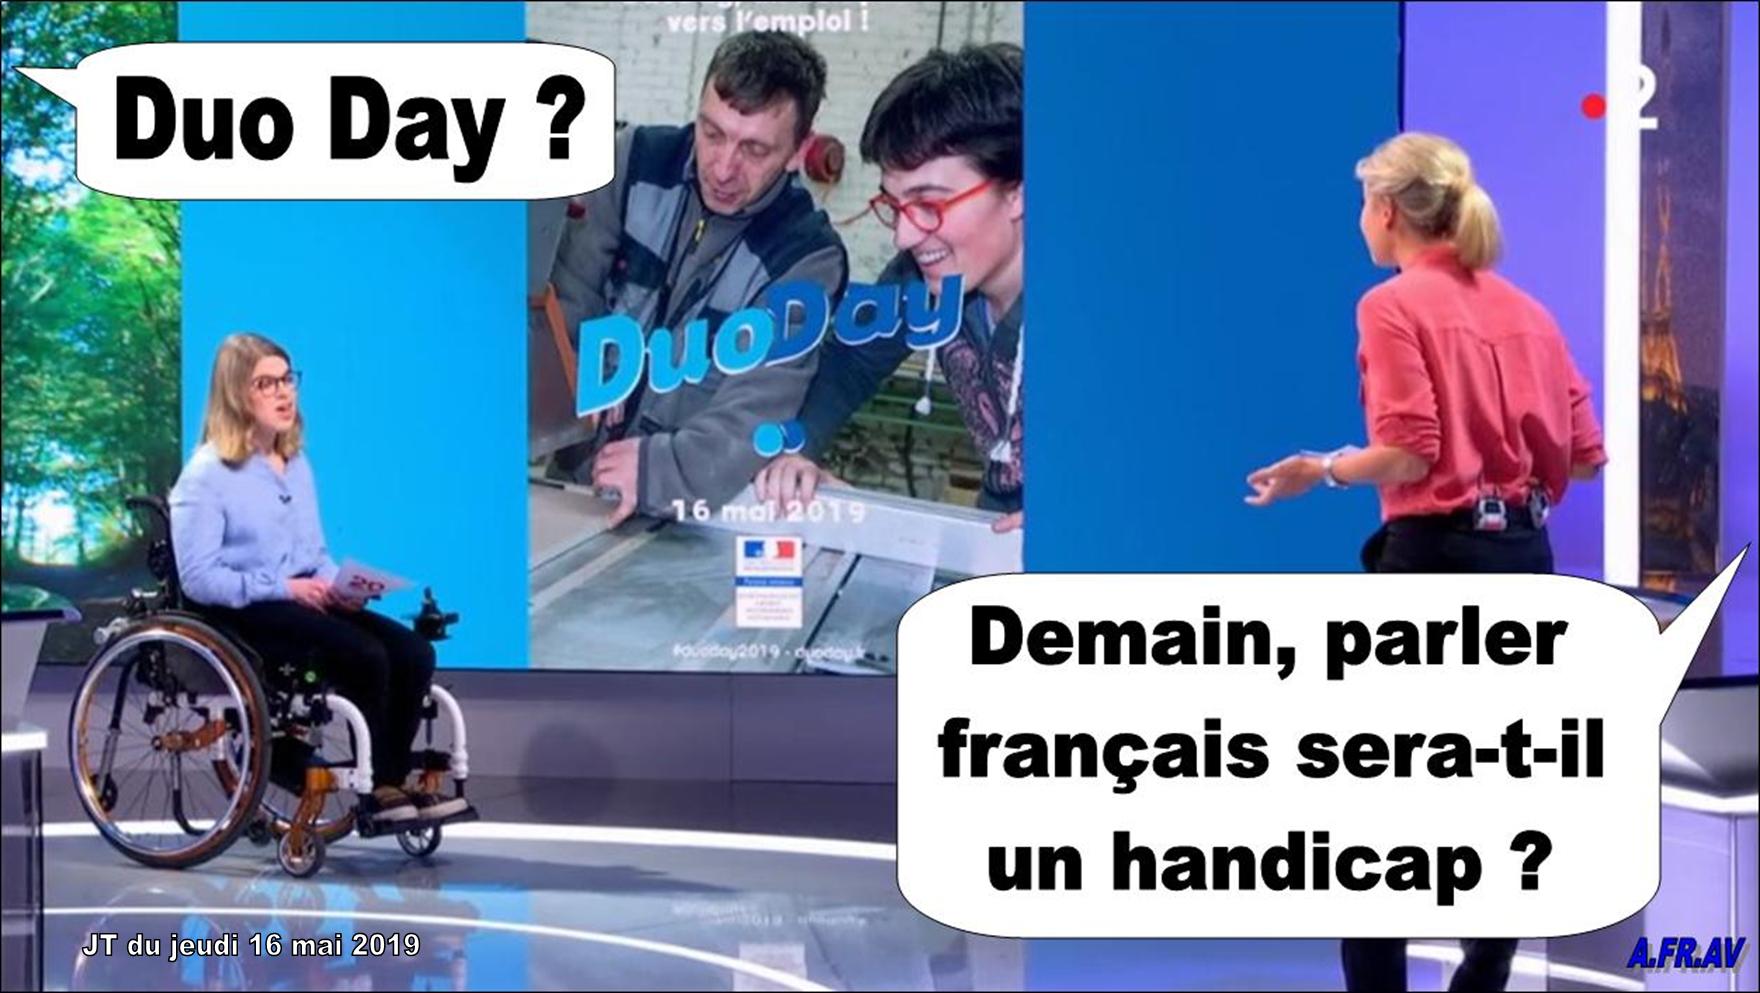 Journée du handicap sur France 2, le Duo Day